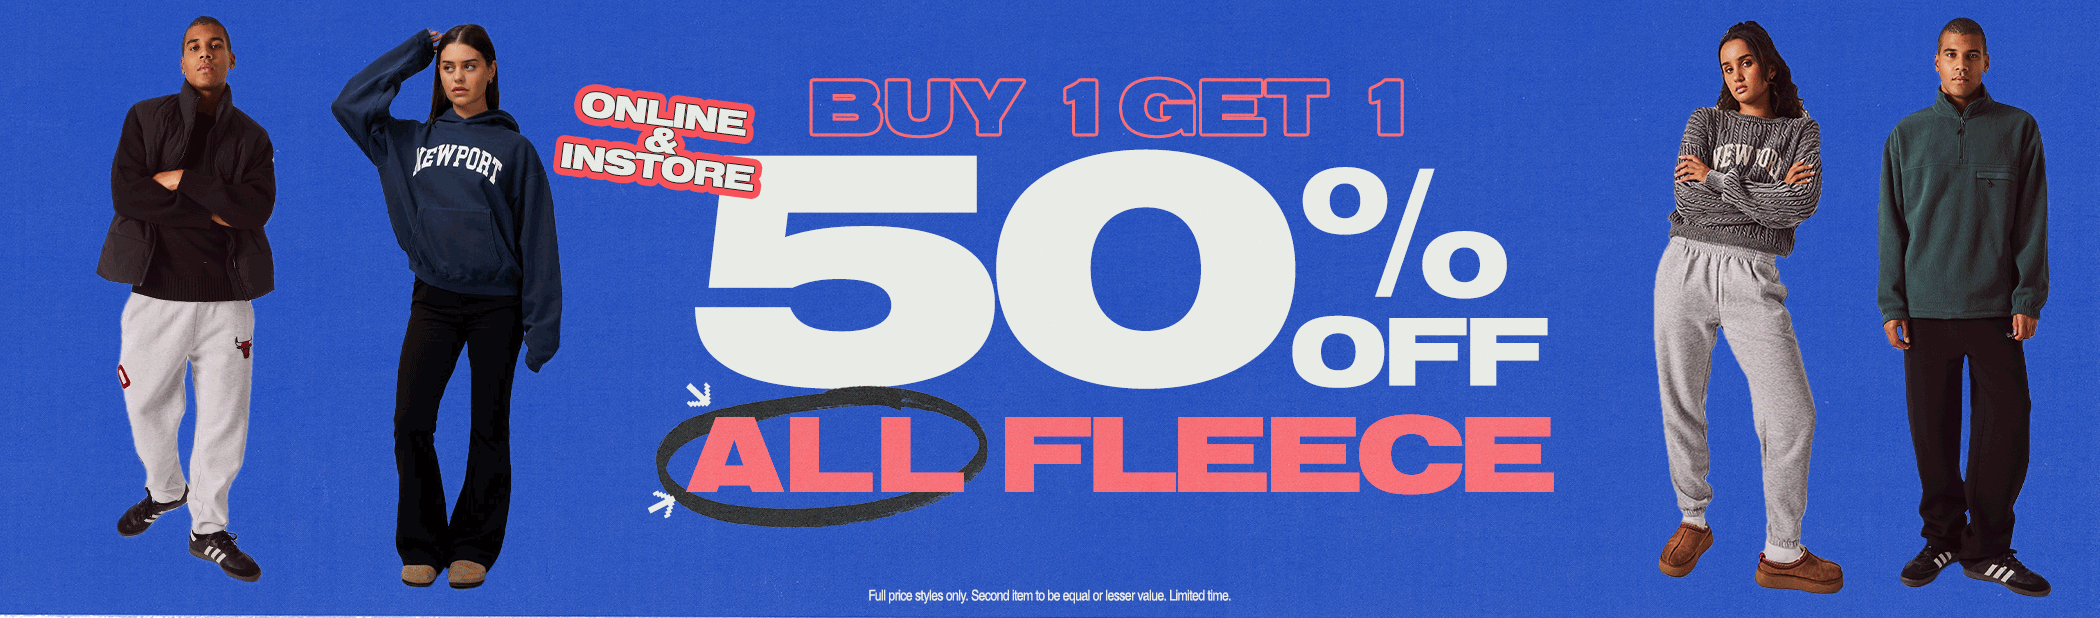 Buy One, Get One 50% Off All Fleece!*